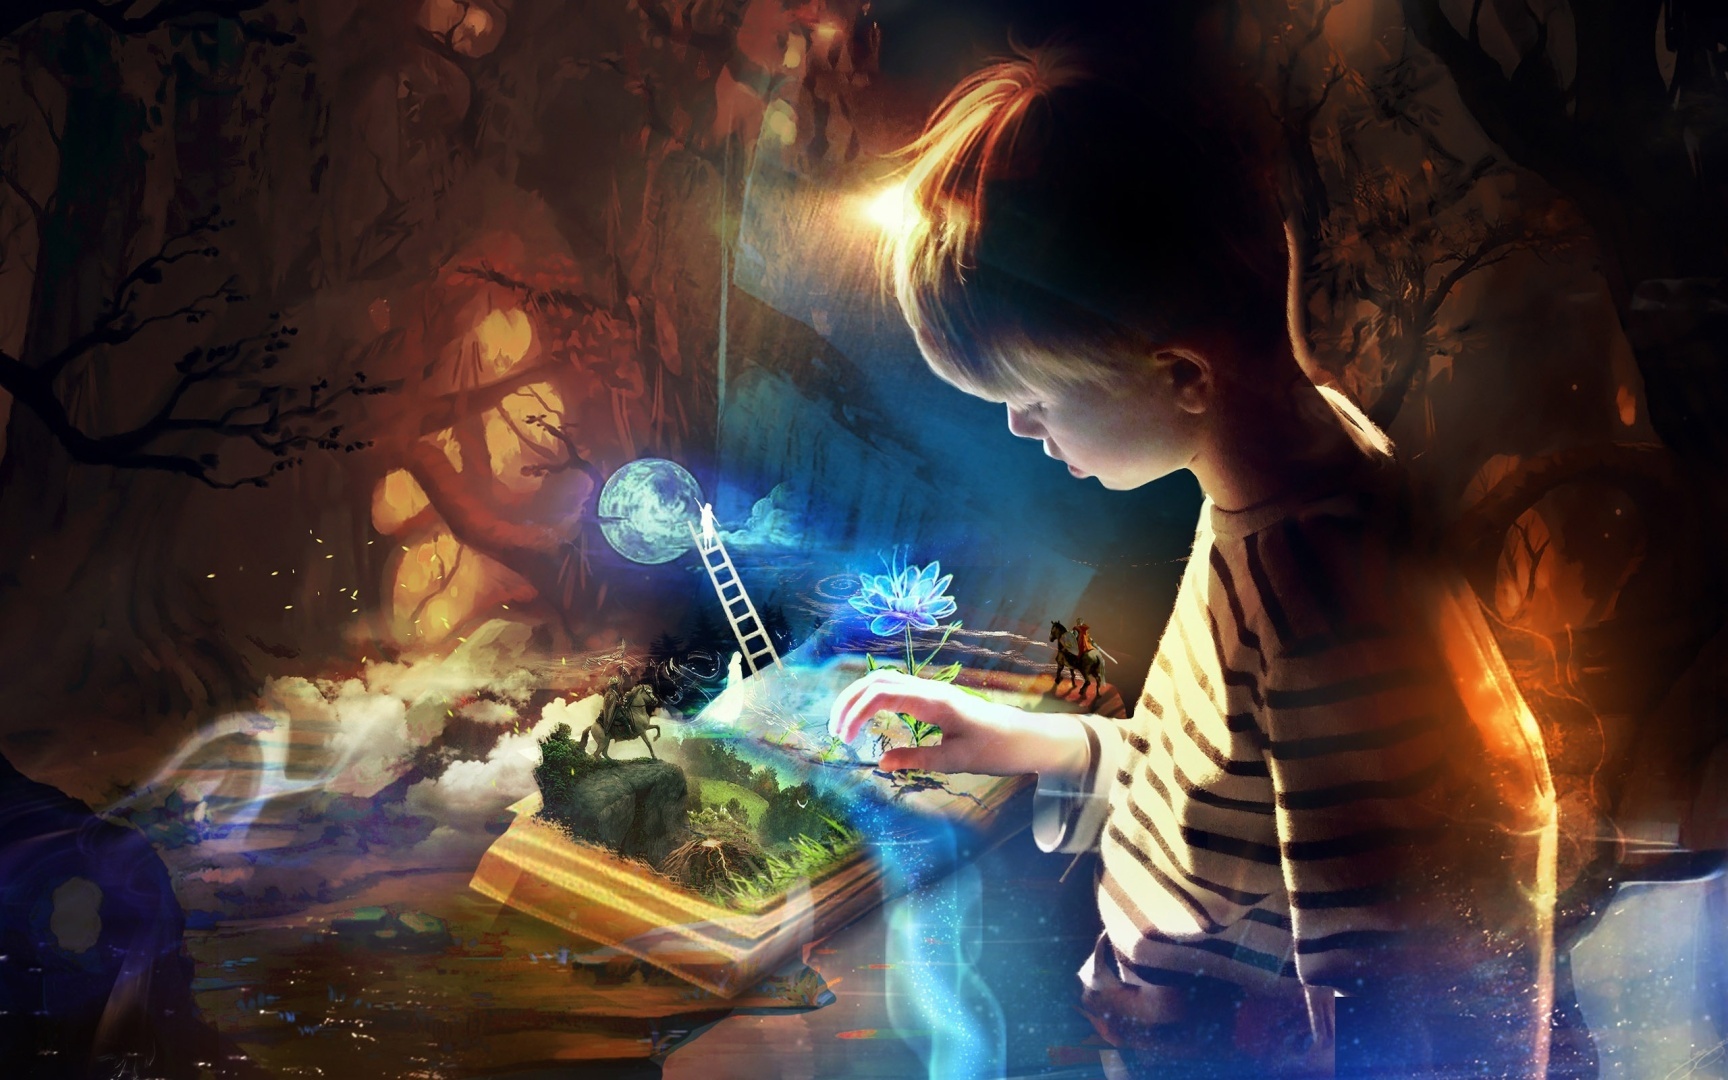 Playing with magic. Волшебство в картинках. Фантазия и воображение. Волшебство для детей. Волшебные иллюстрации.